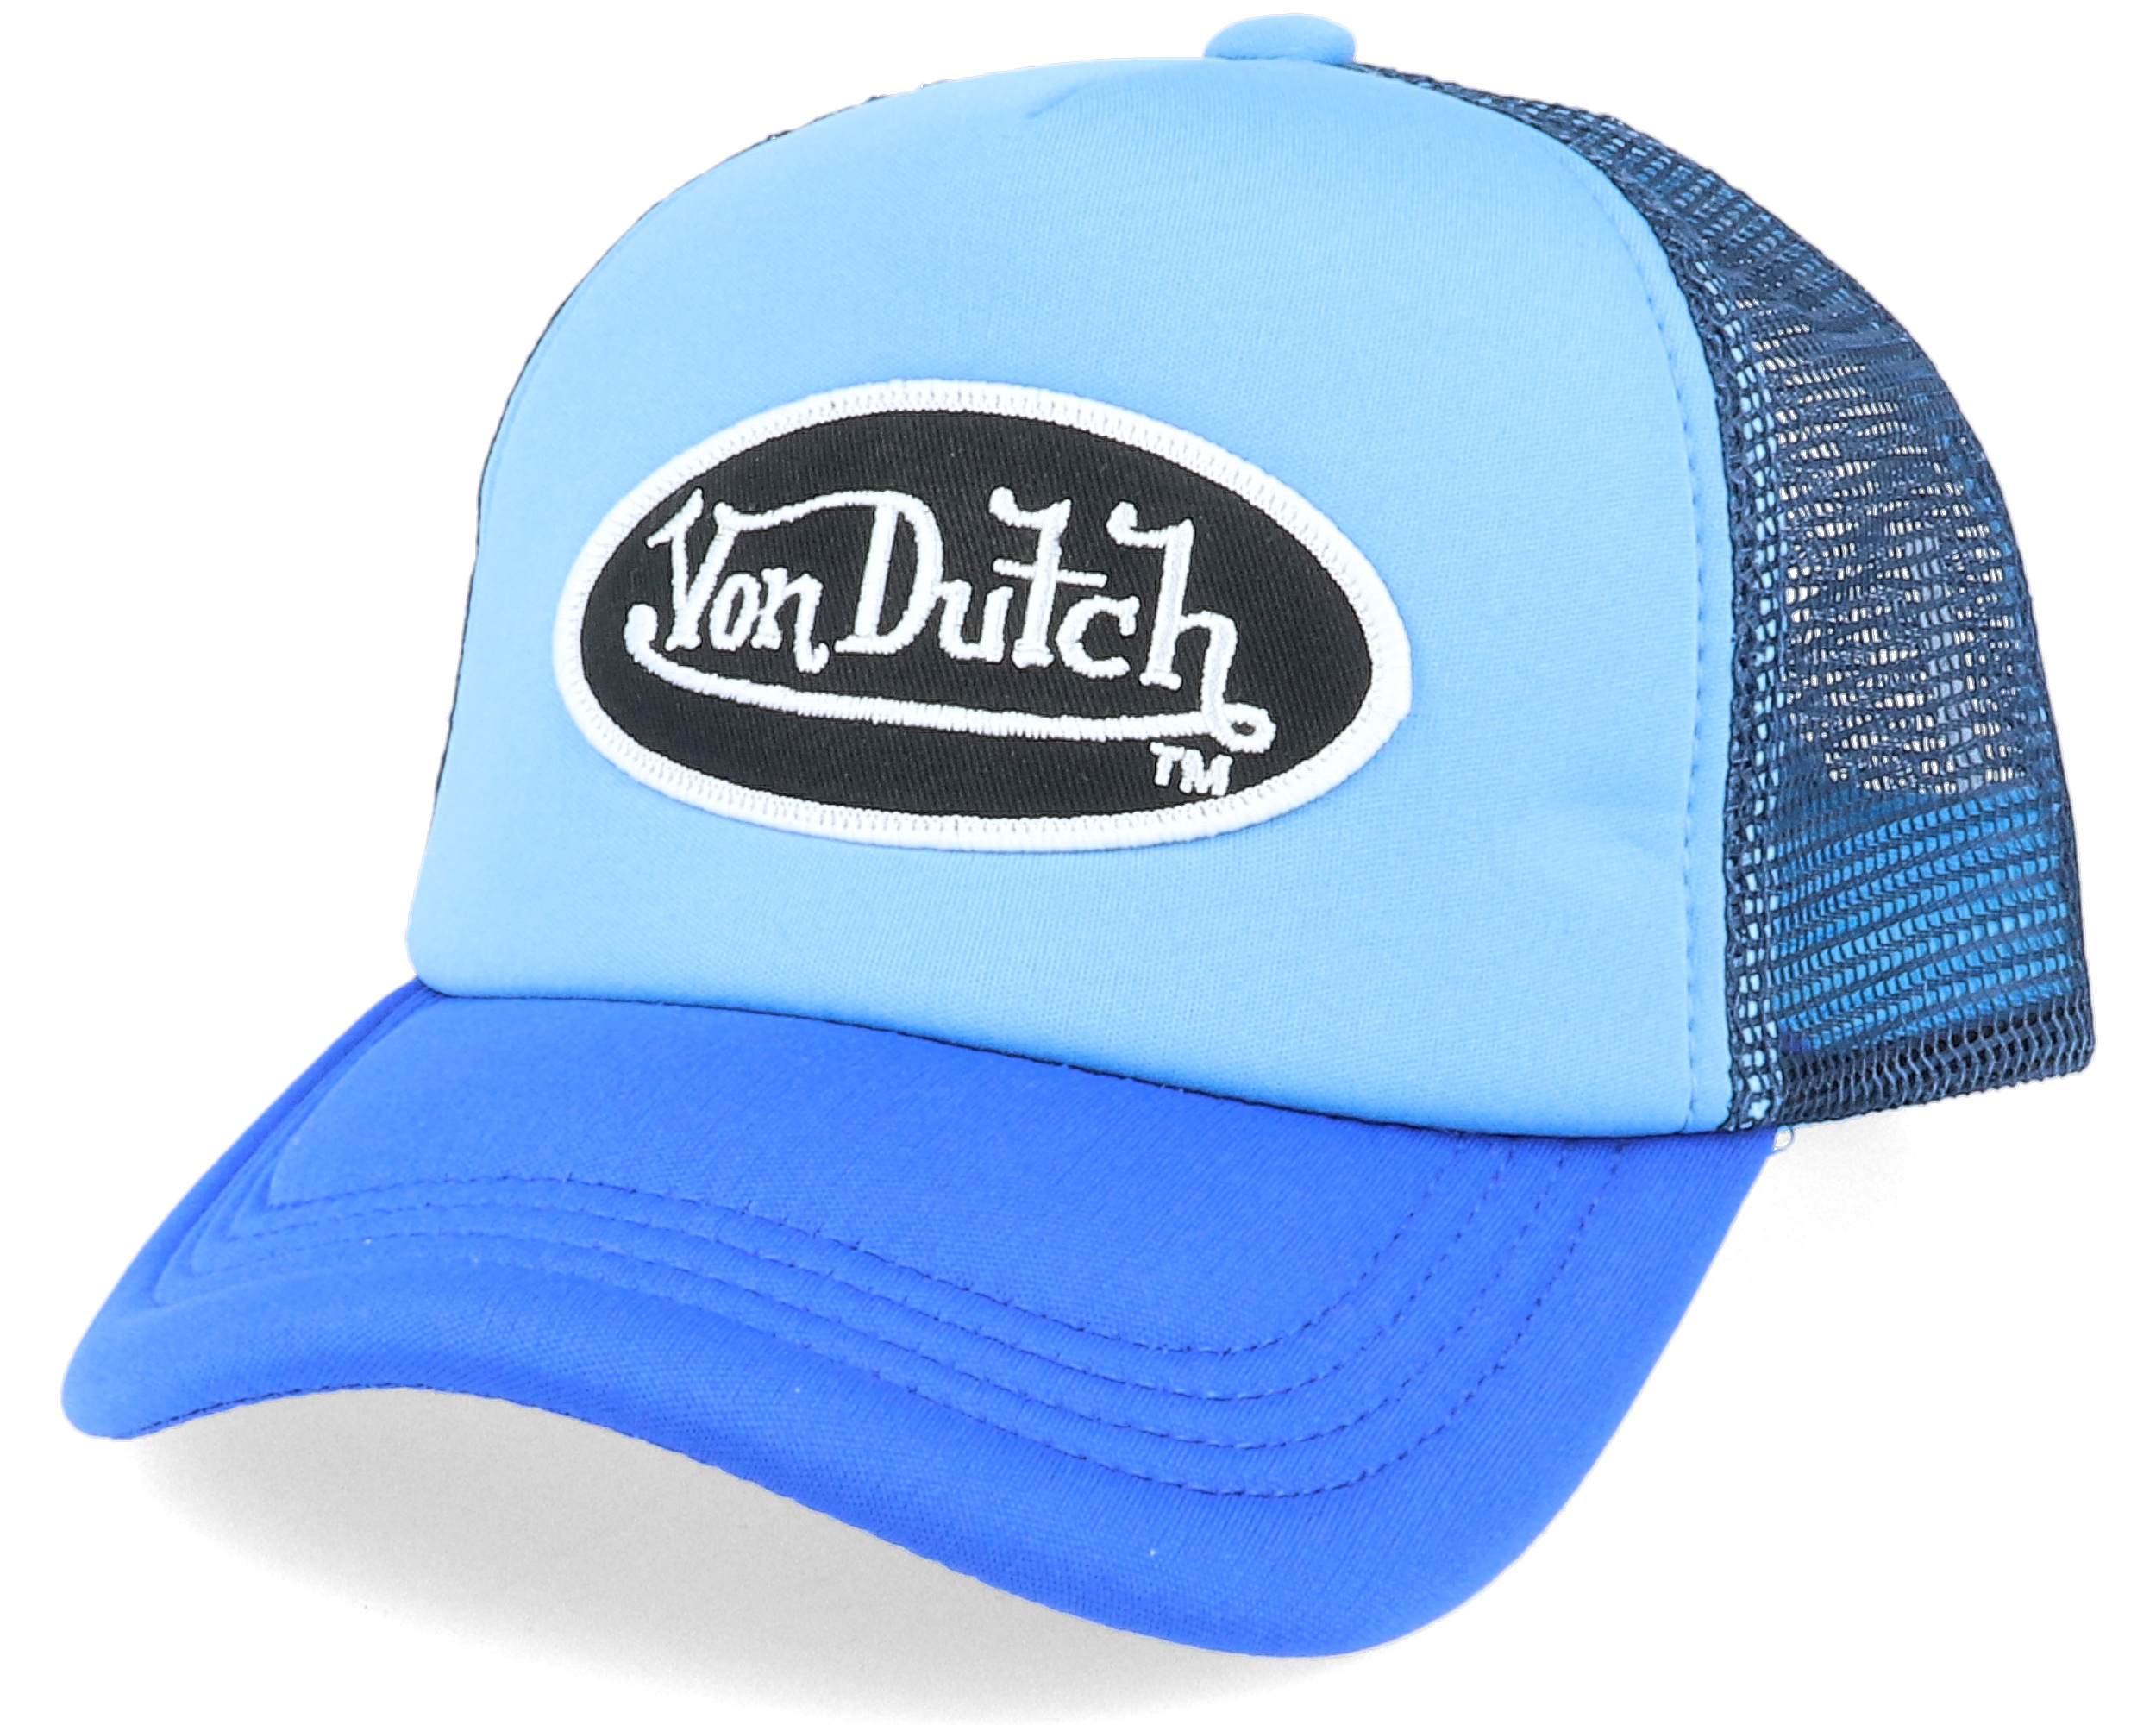 Oval Patch Blue/Navy Trucker - Von Dutch cap